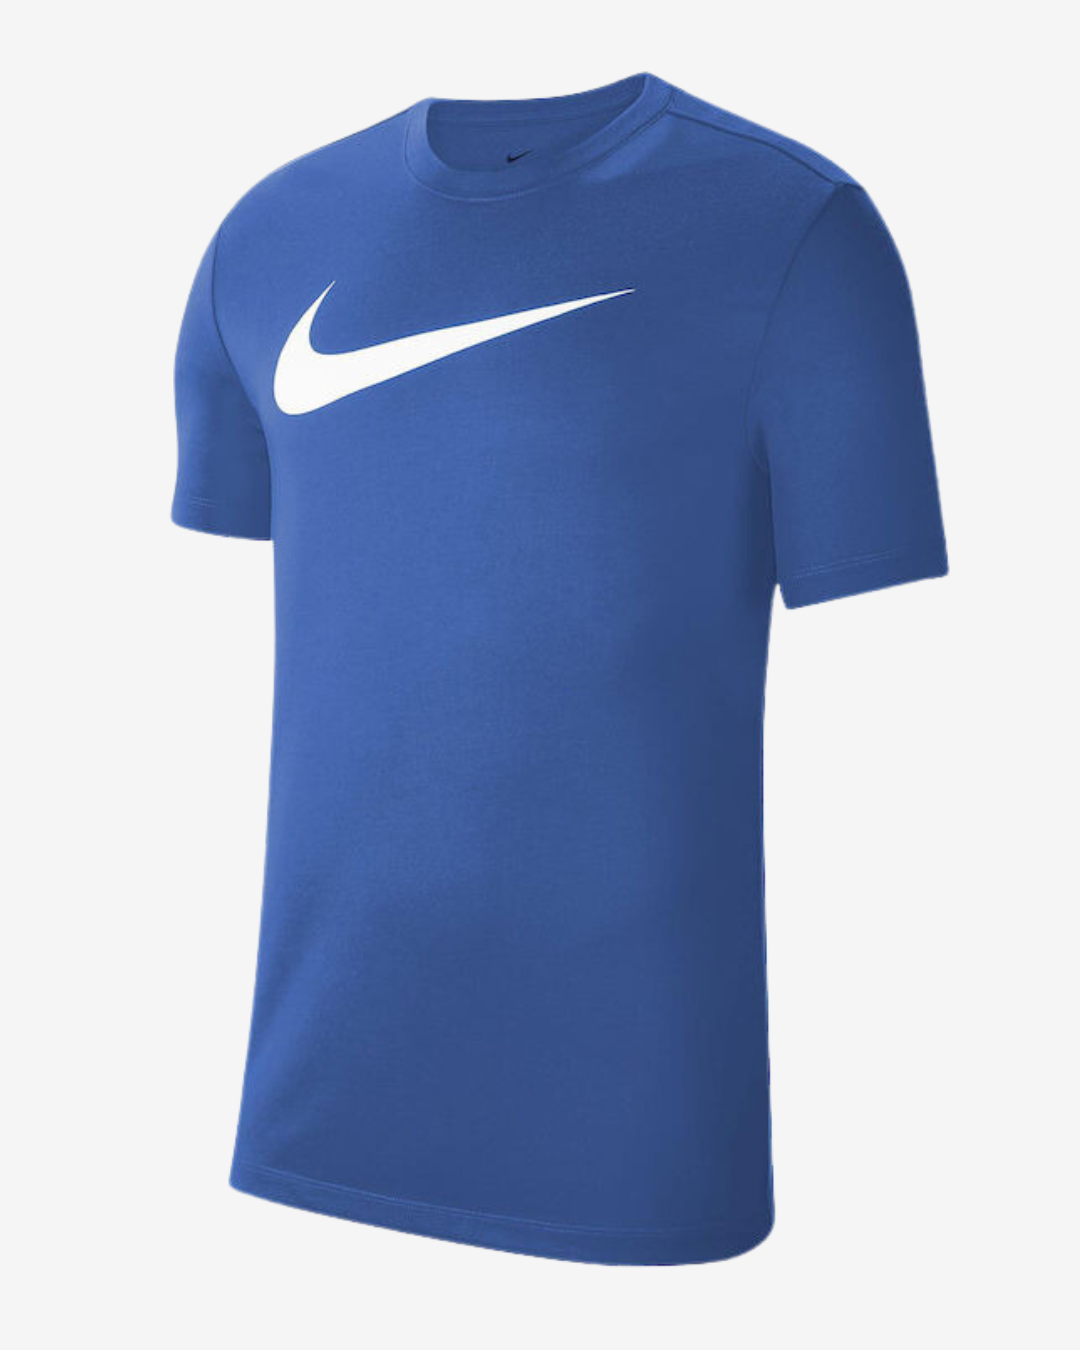 Billede af Nike Dri-fit park 20 t-shirt - Blå - Str. XL - Modish.dk